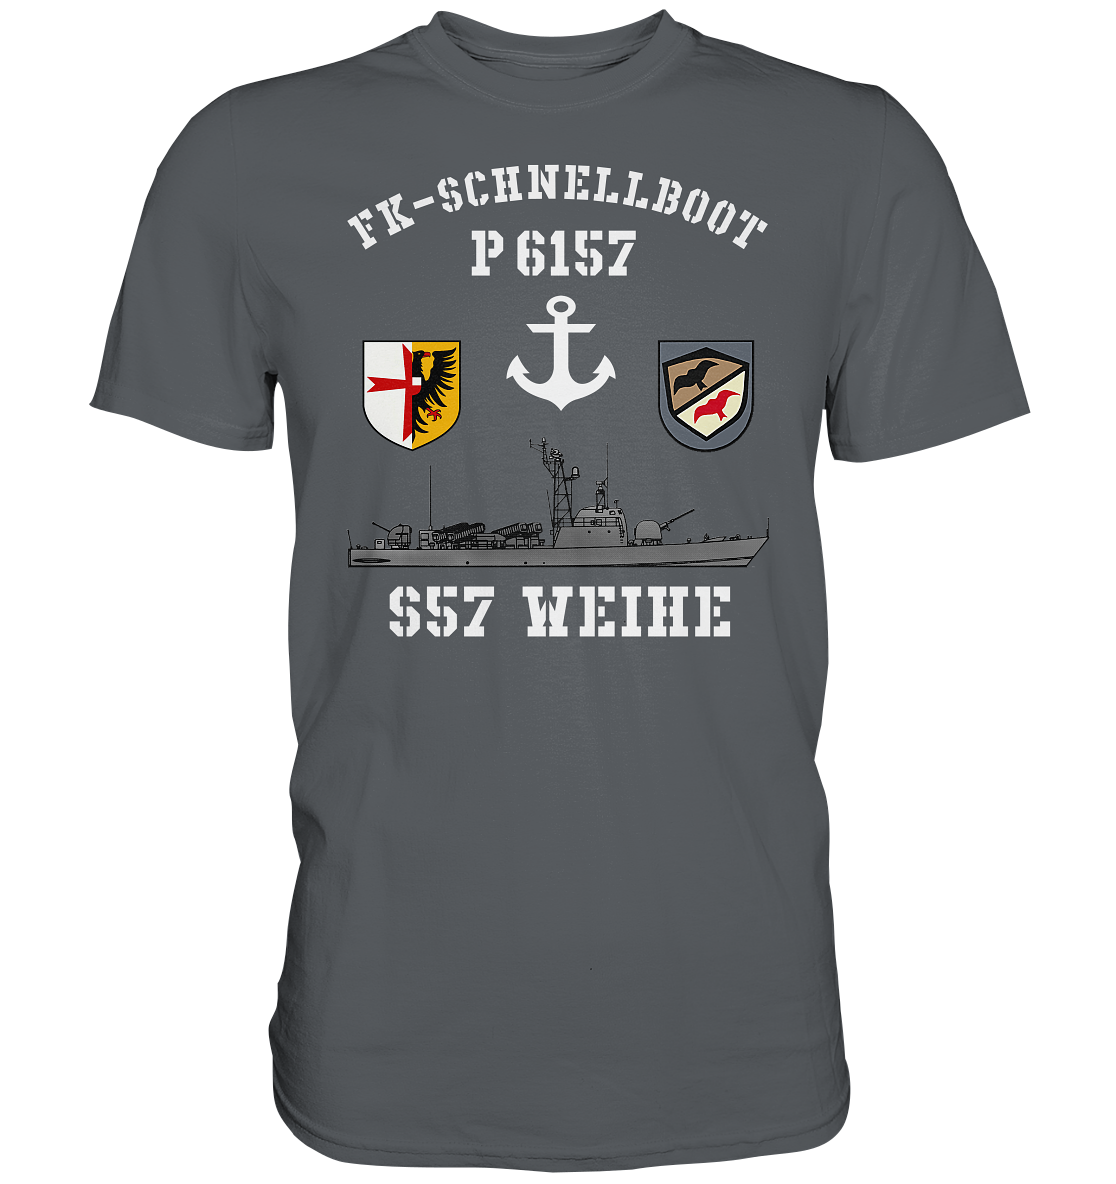 FK-Schnellboot P6157 WEIHE Anker - Premium Shirt